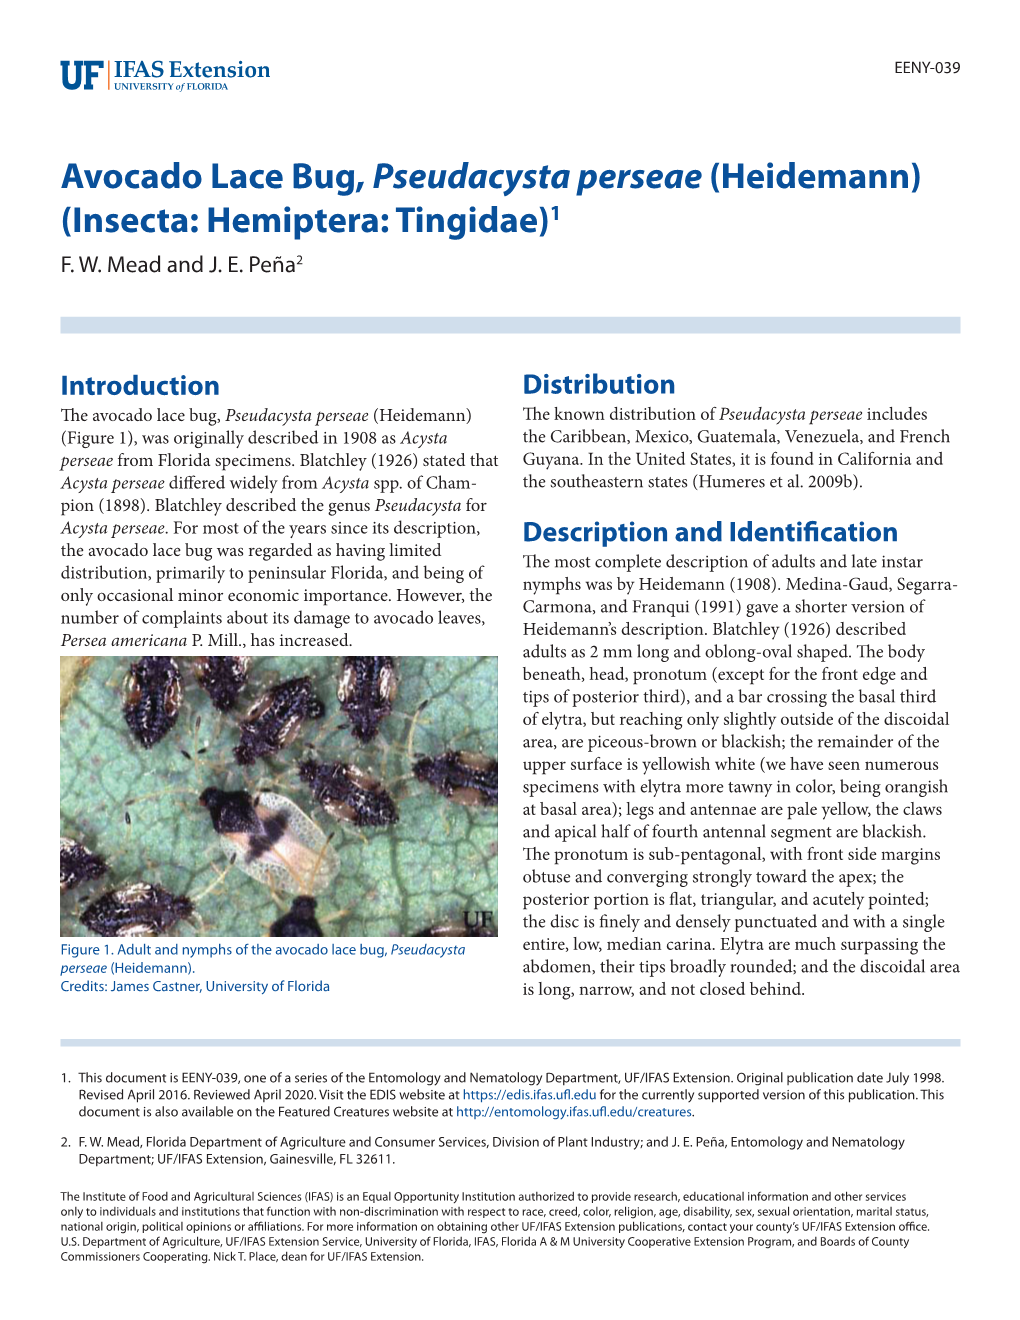 Avocado Lace Bug, Pseudacysta Perseae (Heidemann) (Insecta: Hemiptera: Tingidae)1 F